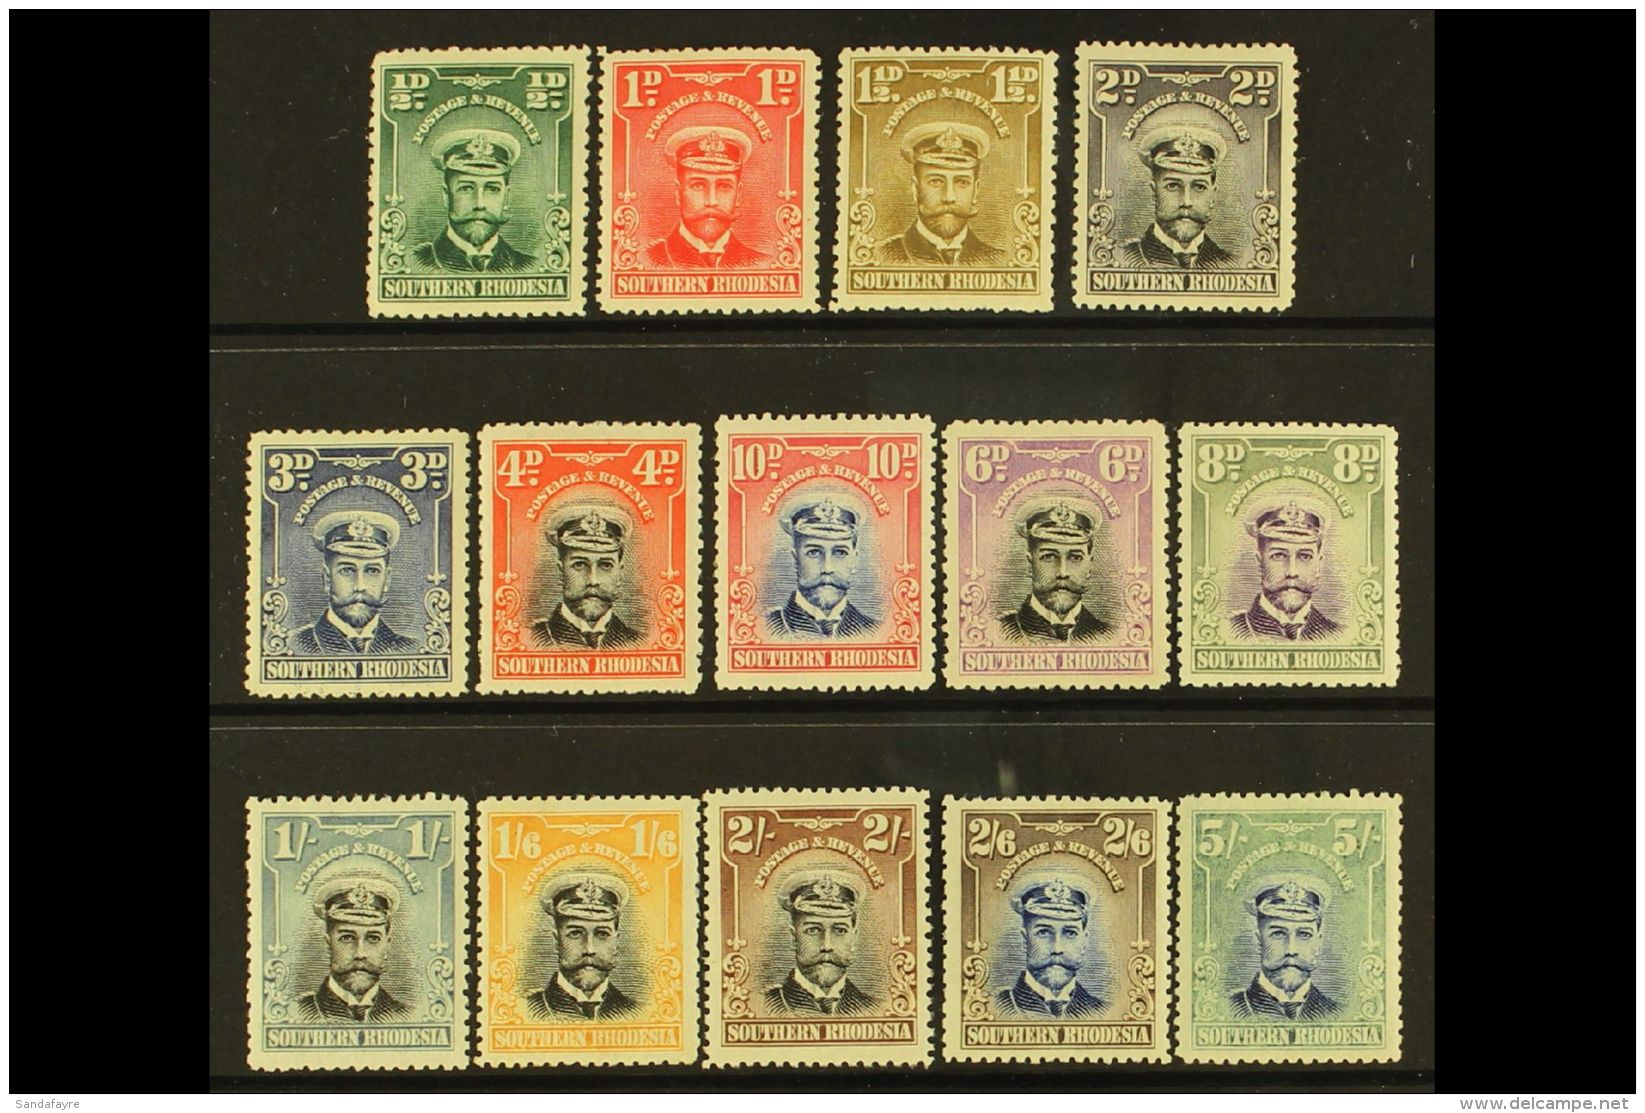 1924-29 KGV "Admiral" Definitives Complete Set, SG 1/14, Fine Mint (14 Stamps) For More Images, Please Visit... - Rhodésie Du Sud (...-1964)